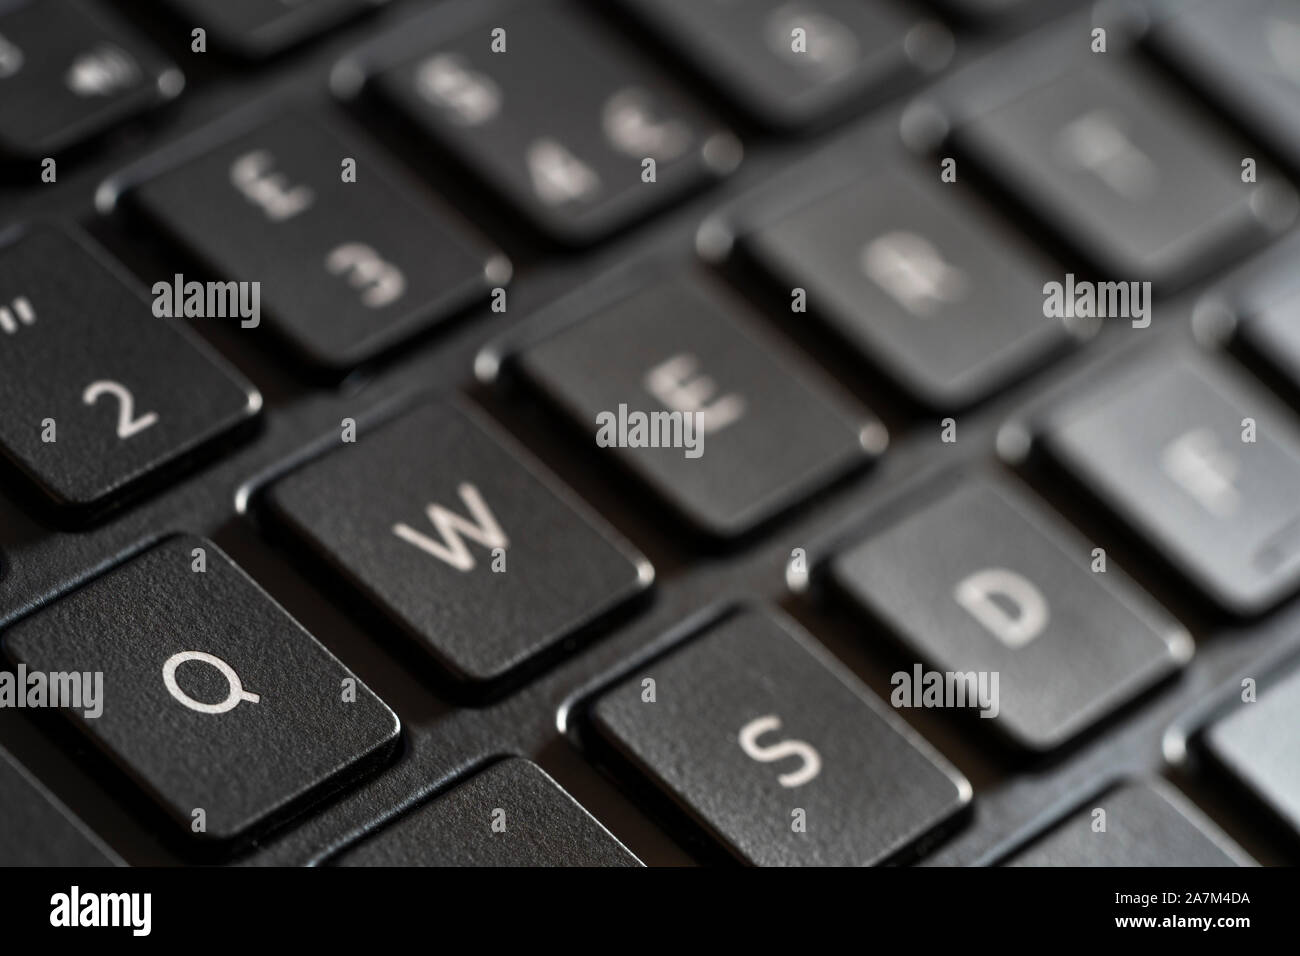 Un clavier anglais qwerty. Concept - les mots de passe. qwerty est l'un des plus communs et non sécurisé de mots de passe dans l'utilisation Banque D'Images